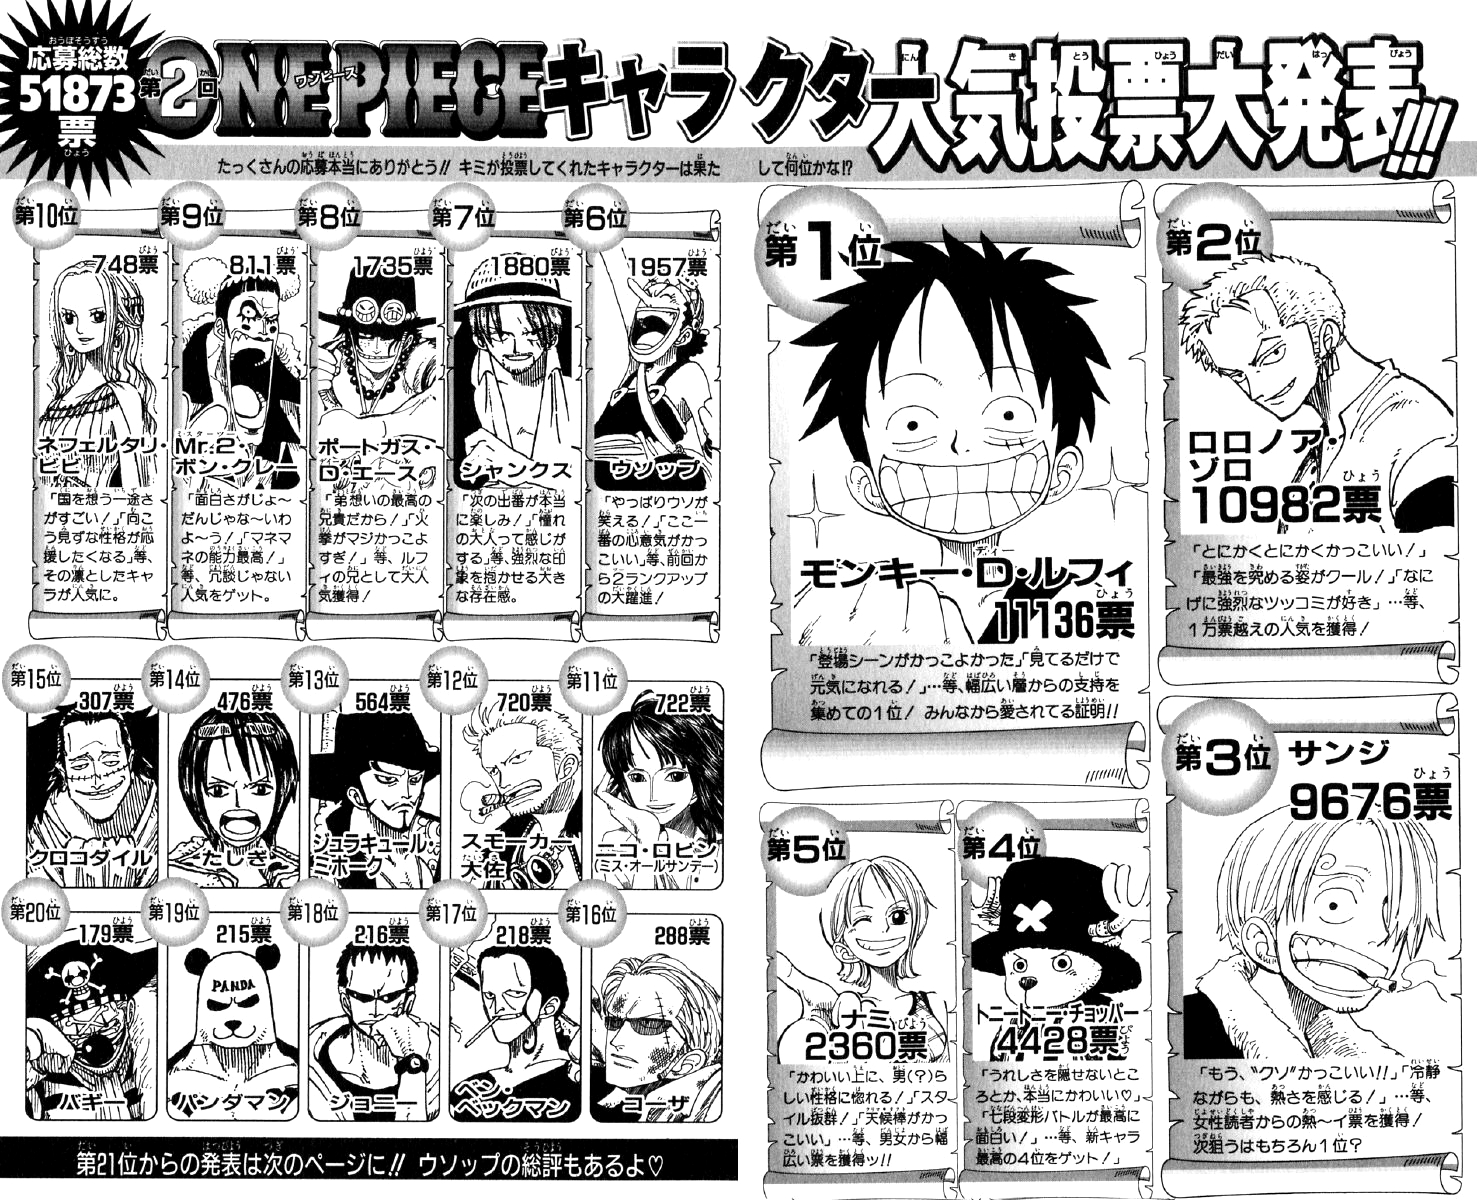 Pesquisa de Popularidade One Piece 2021 Definitiva